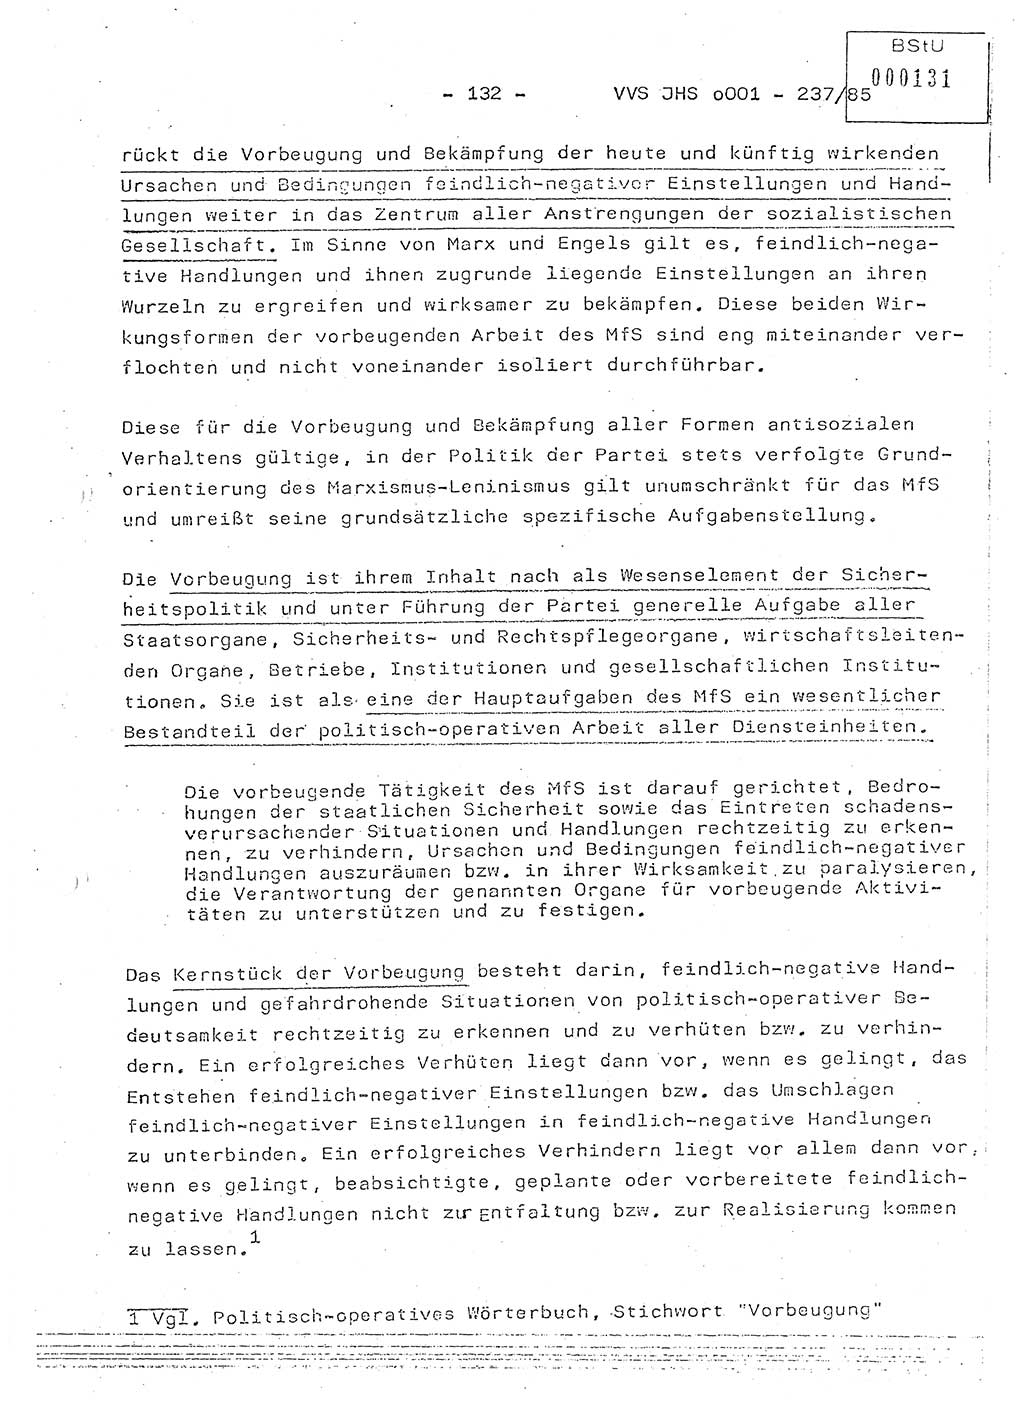 Dissertation Oberstleutnant Peter Jakulski (JHS), Oberstleutnat Christian Rudolph (HA Ⅸ), Major Horst Böttger (ZMD), Major Wolfgang Grüneberg (JHS), Major Albert Meutsch (JHS), Ministerium für Staatssicherheit (MfS) [Deutsche Demokratische Republik (DDR)], Juristische Hochschule (JHS), Vertrauliche Verschlußsache (VVS) o001-237/85, Potsdam 1985, Seite 132 (Diss. MfS DDR JHS VVS o001-237/85 1985, S. 132)